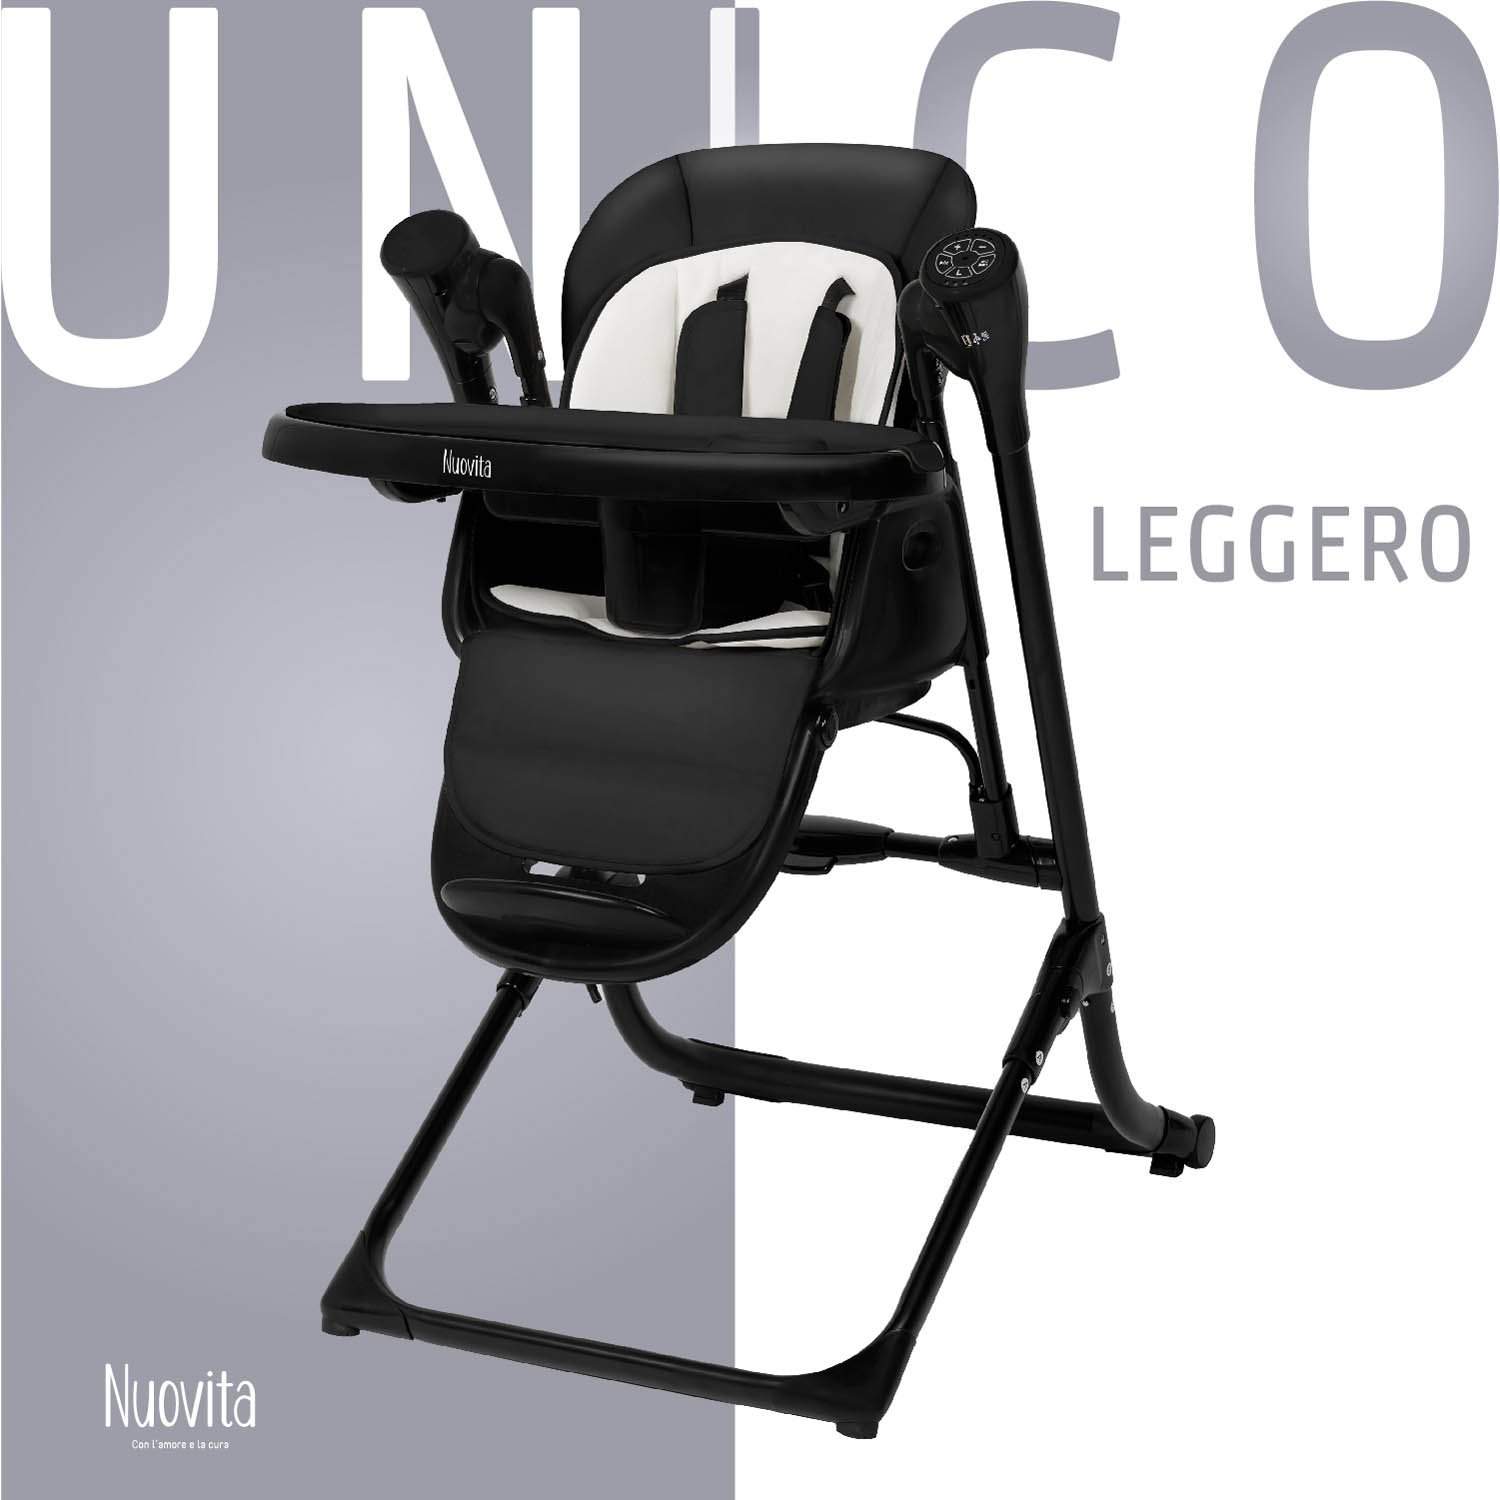 Стульчик для кормления с электронной функцией качения Nuovita Unico Leggero Nero черный стульчик для кормления nuovita с электронной функцией качения unico story